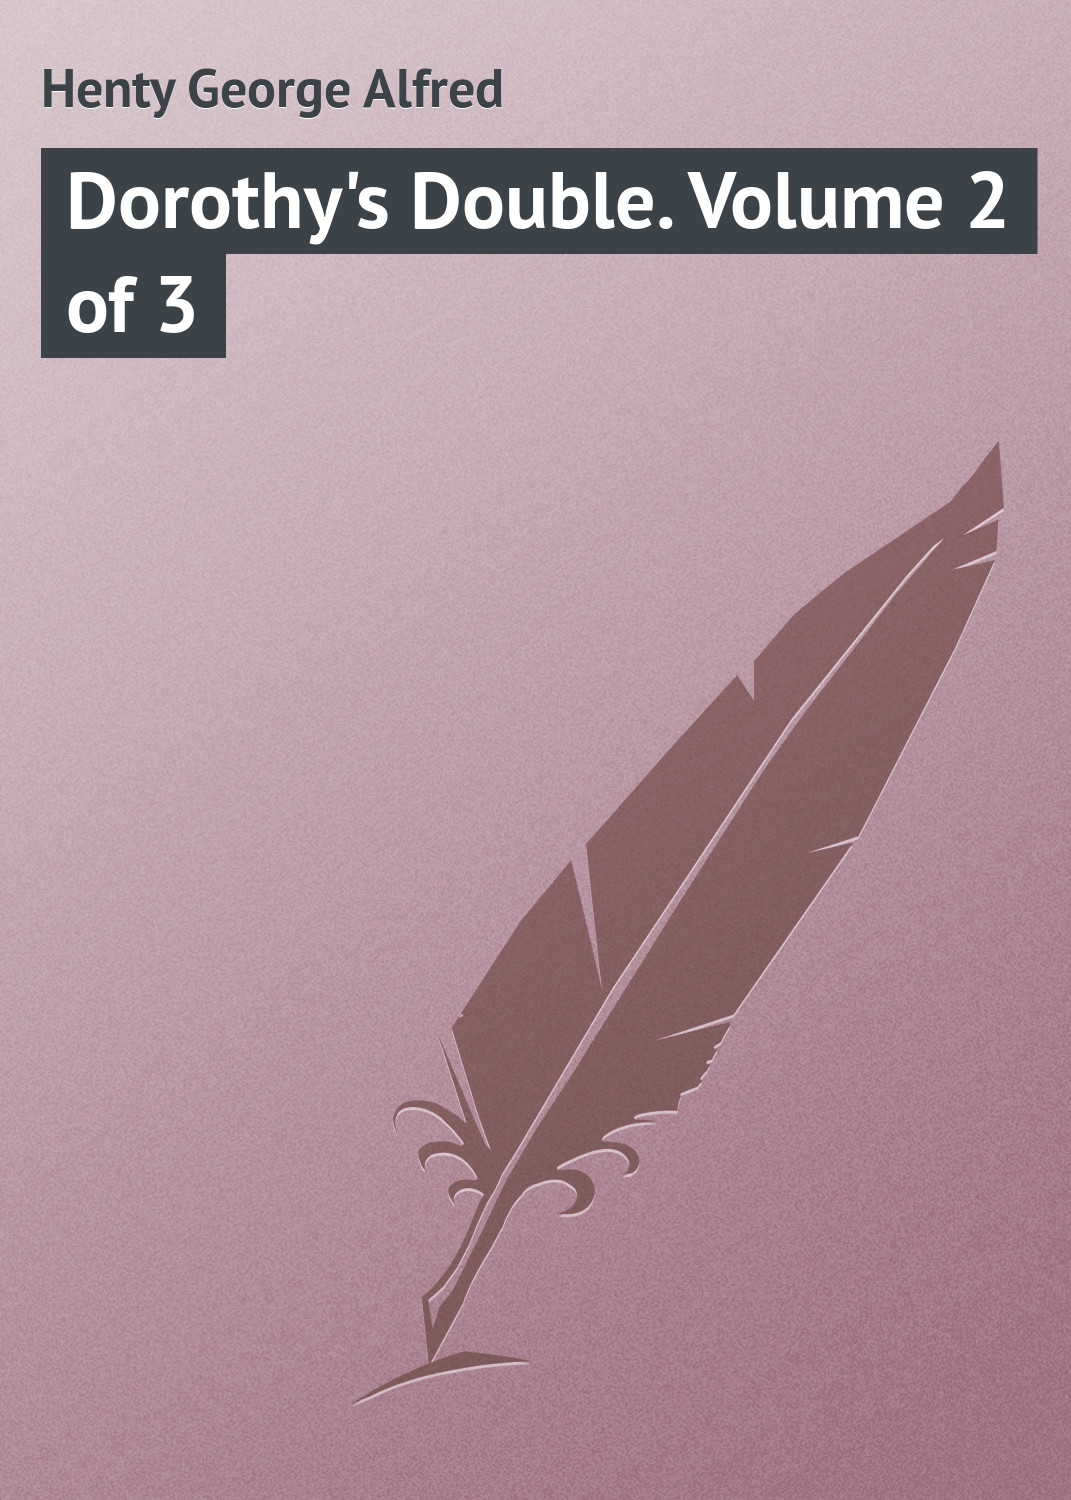 Книга Dorothy's Double. Volume 2 of 3 из серии , созданная George Henty, может относится к жанру Зарубежная классика. Стоимость электронной книги Dorothy's Double. Volume 2 of 3 с идентификатором 23165587 составляет 5.99 руб.